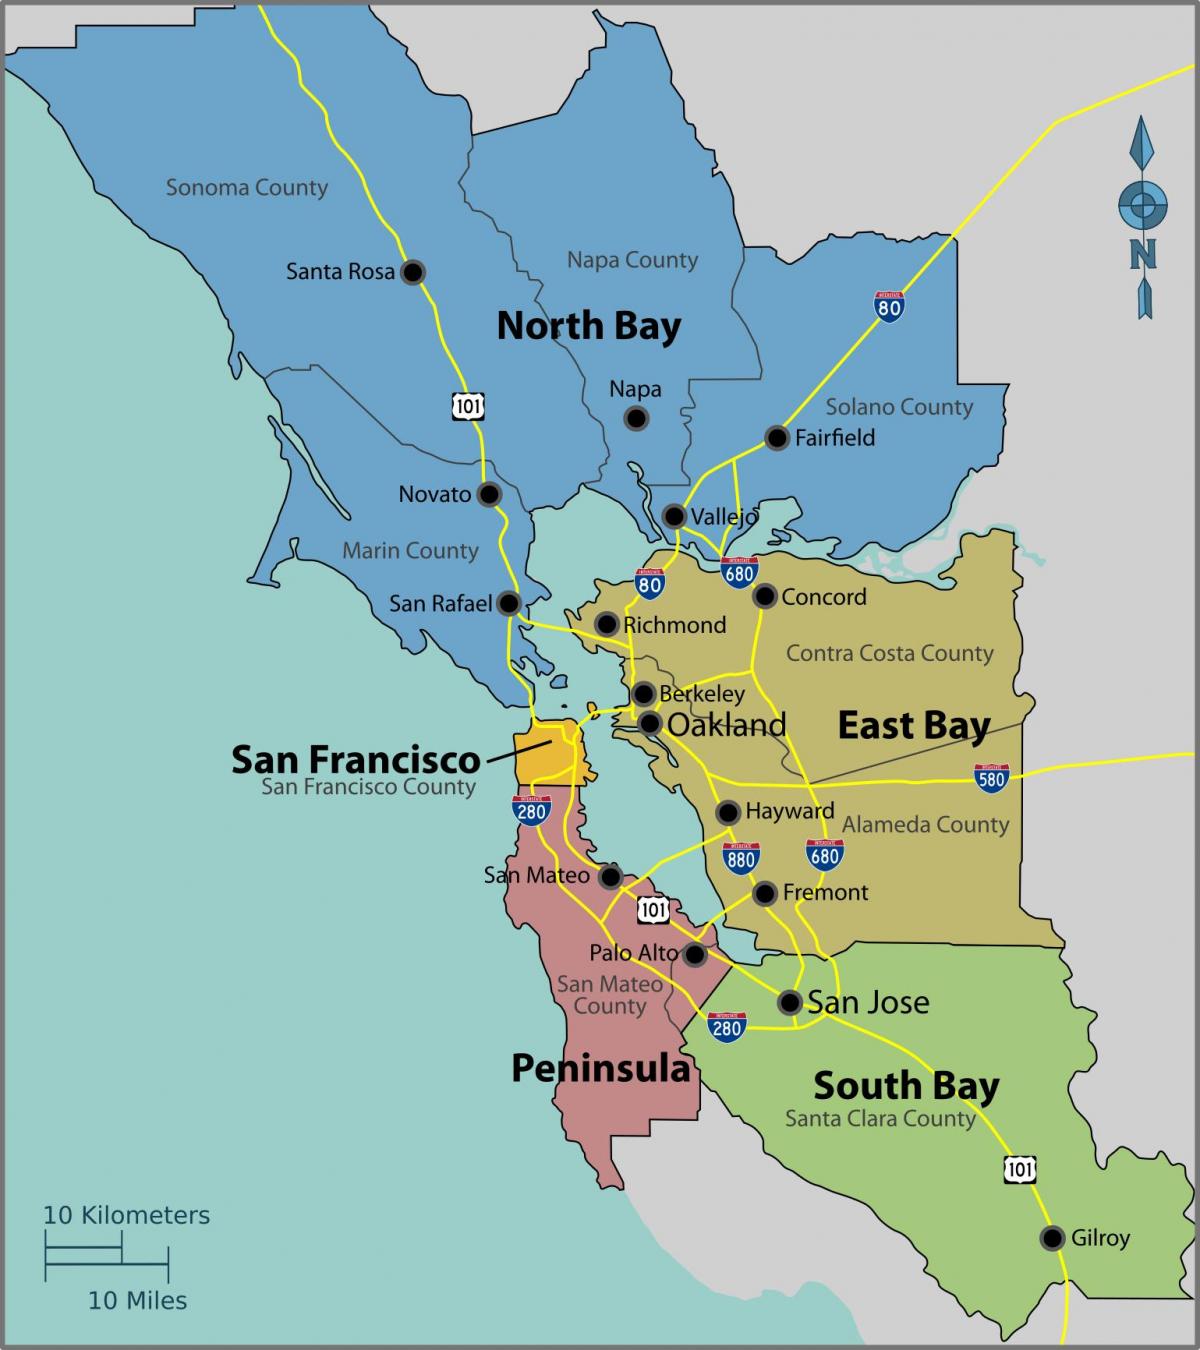 San Francisco bay på et kort